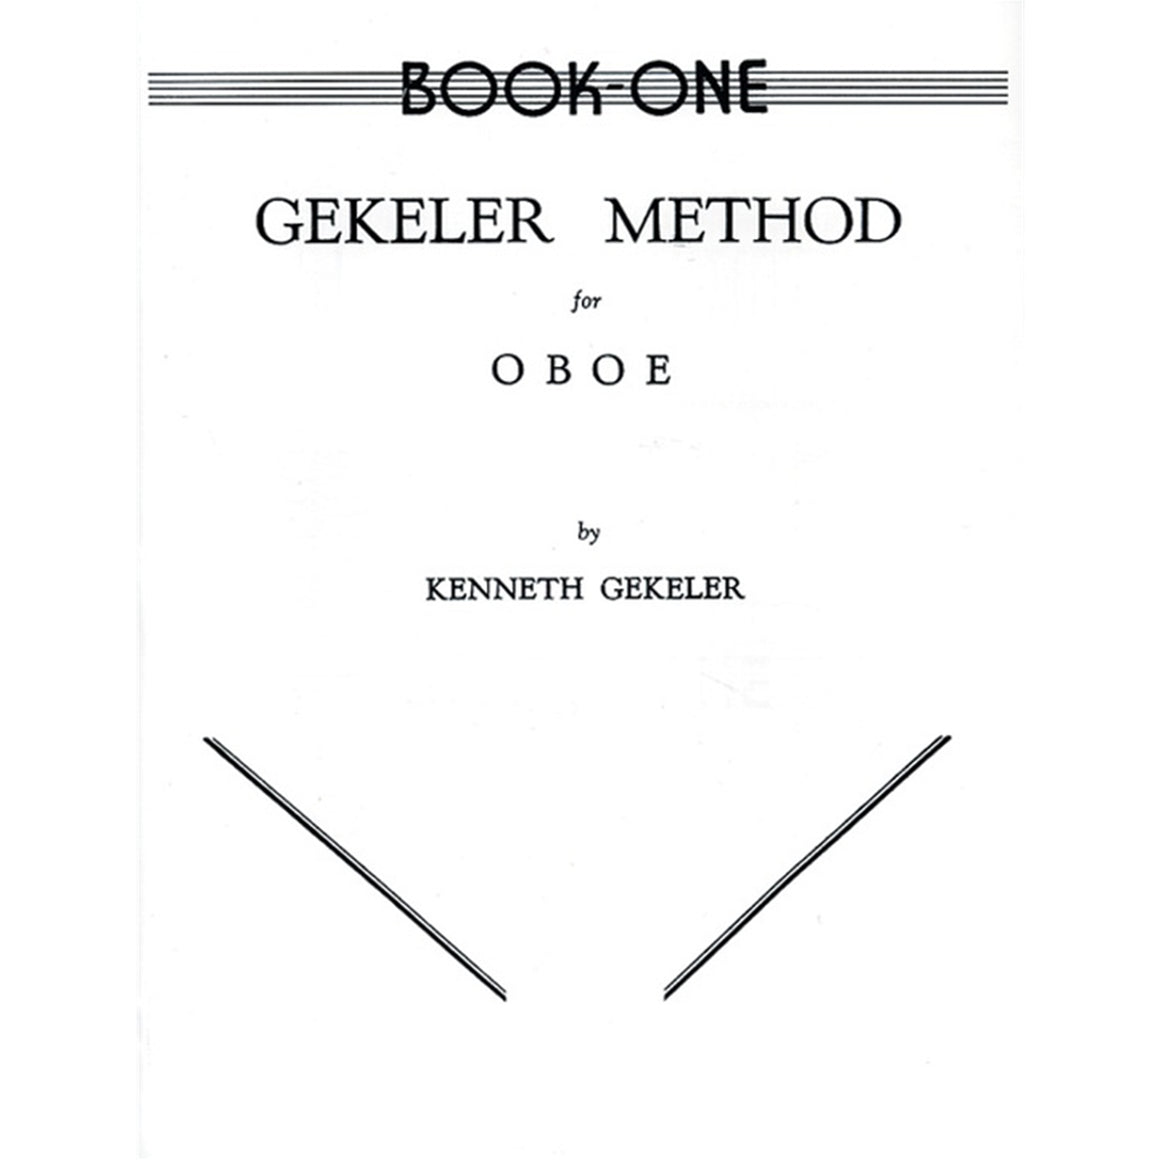 ALFRED EL00081 Gekeler Method for Oboe, Book I [Oboe]